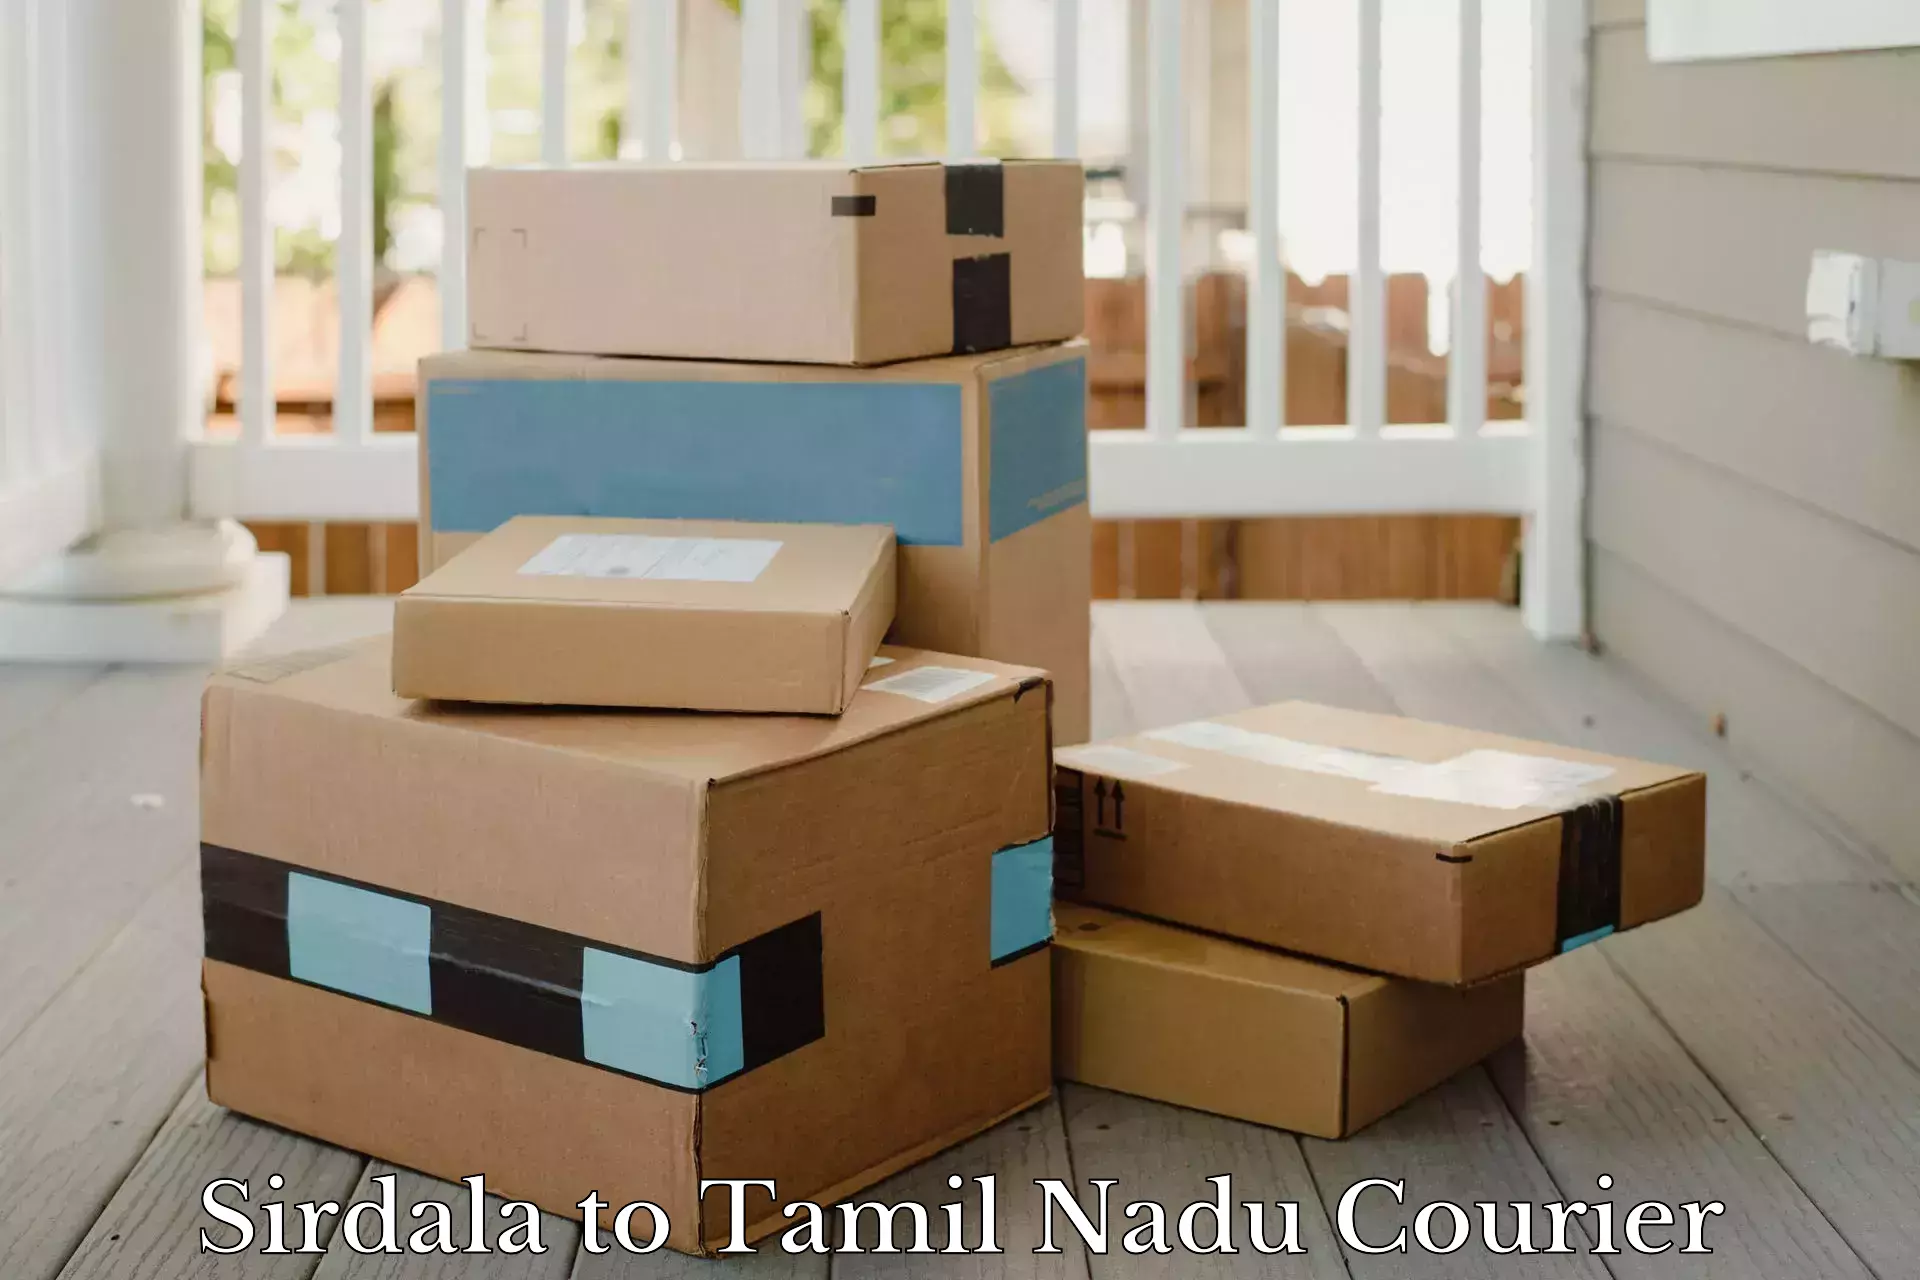 Flexible delivery schedules Sirdala to Thiruvadanai